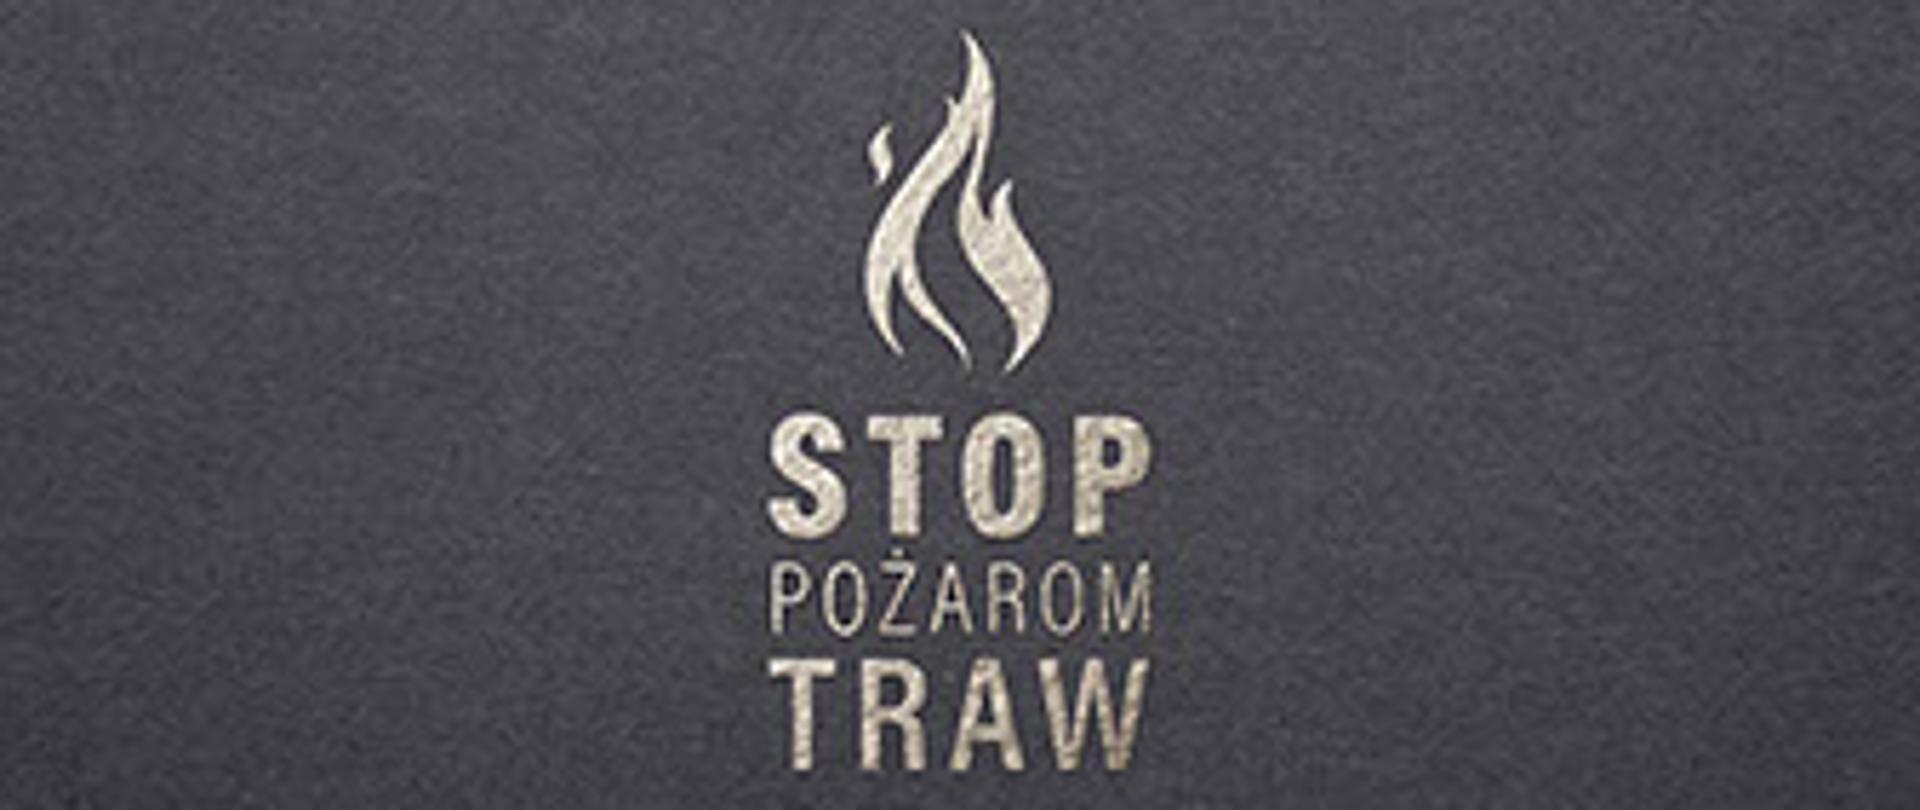 Obraz przedstawia logo kampanii stop pożarom traw. Nad napisem symboliczny płomień.